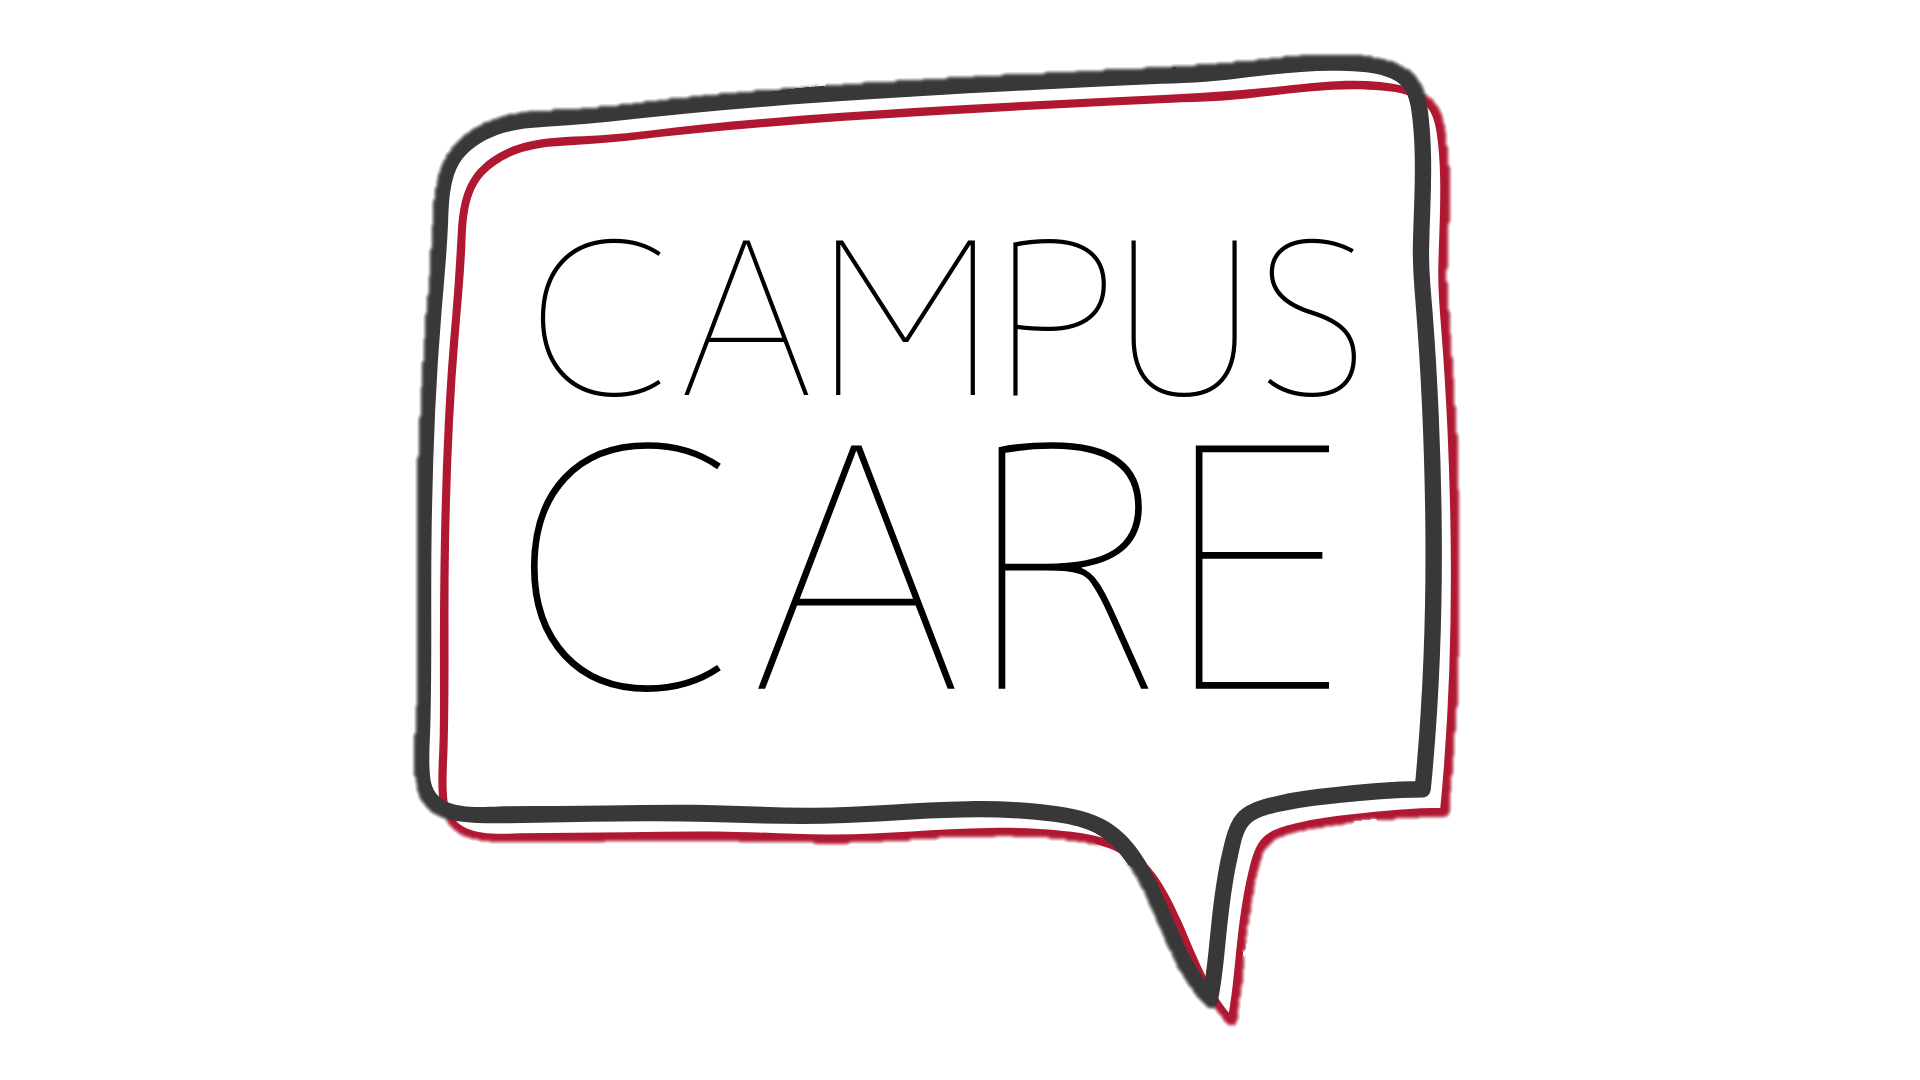 Campus Care